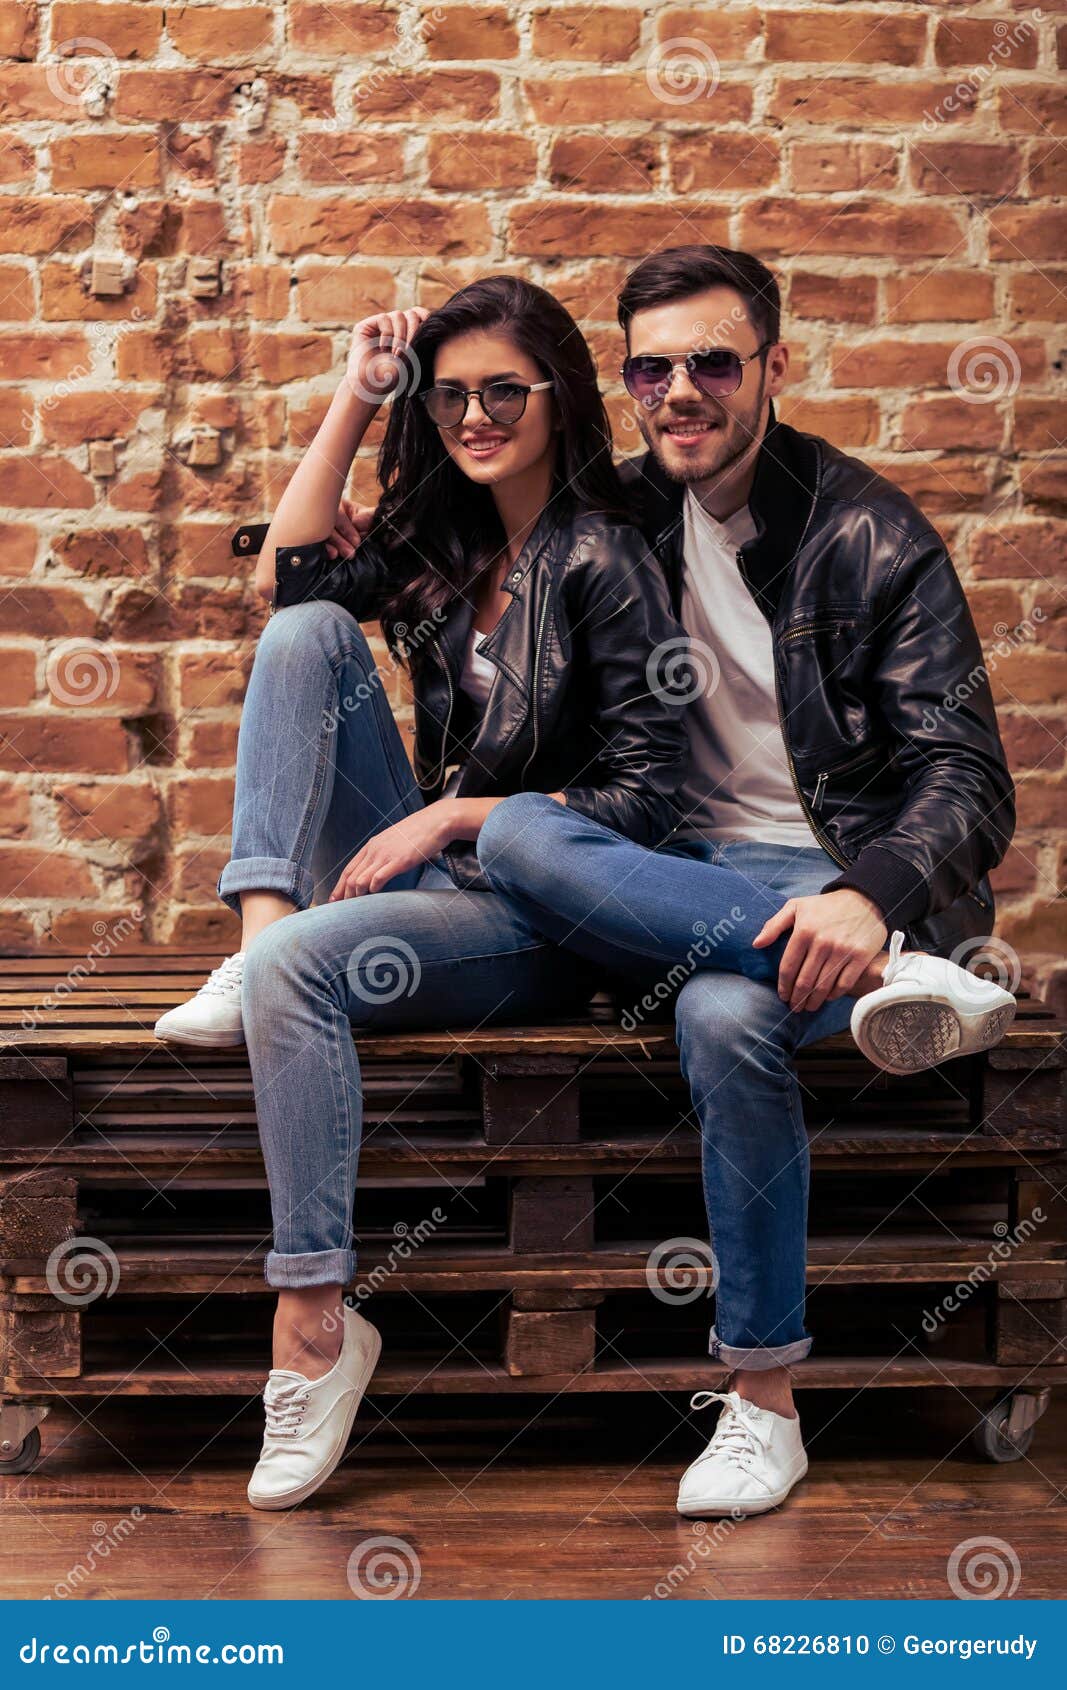 Stylish young couple stock photo. Image of bonding, denim - 68226810